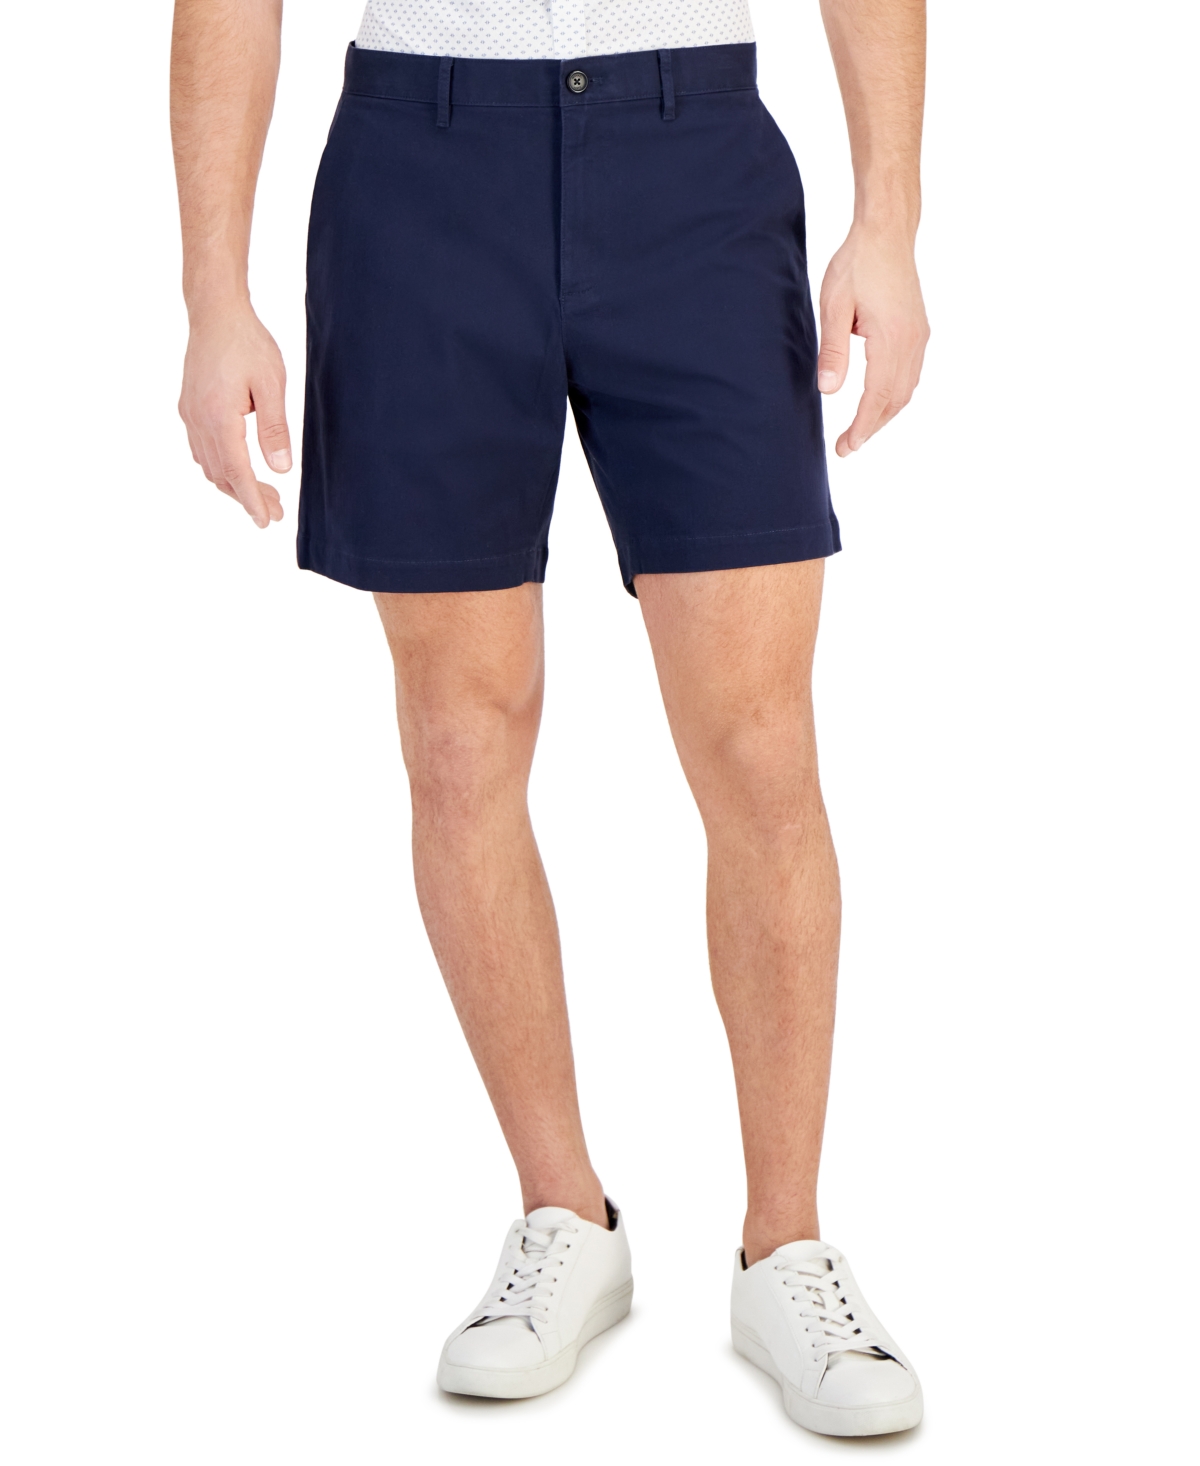 Michael Kors Men's Slim-fit Stretch Herringbone Twill 7" Shorts In Midnight